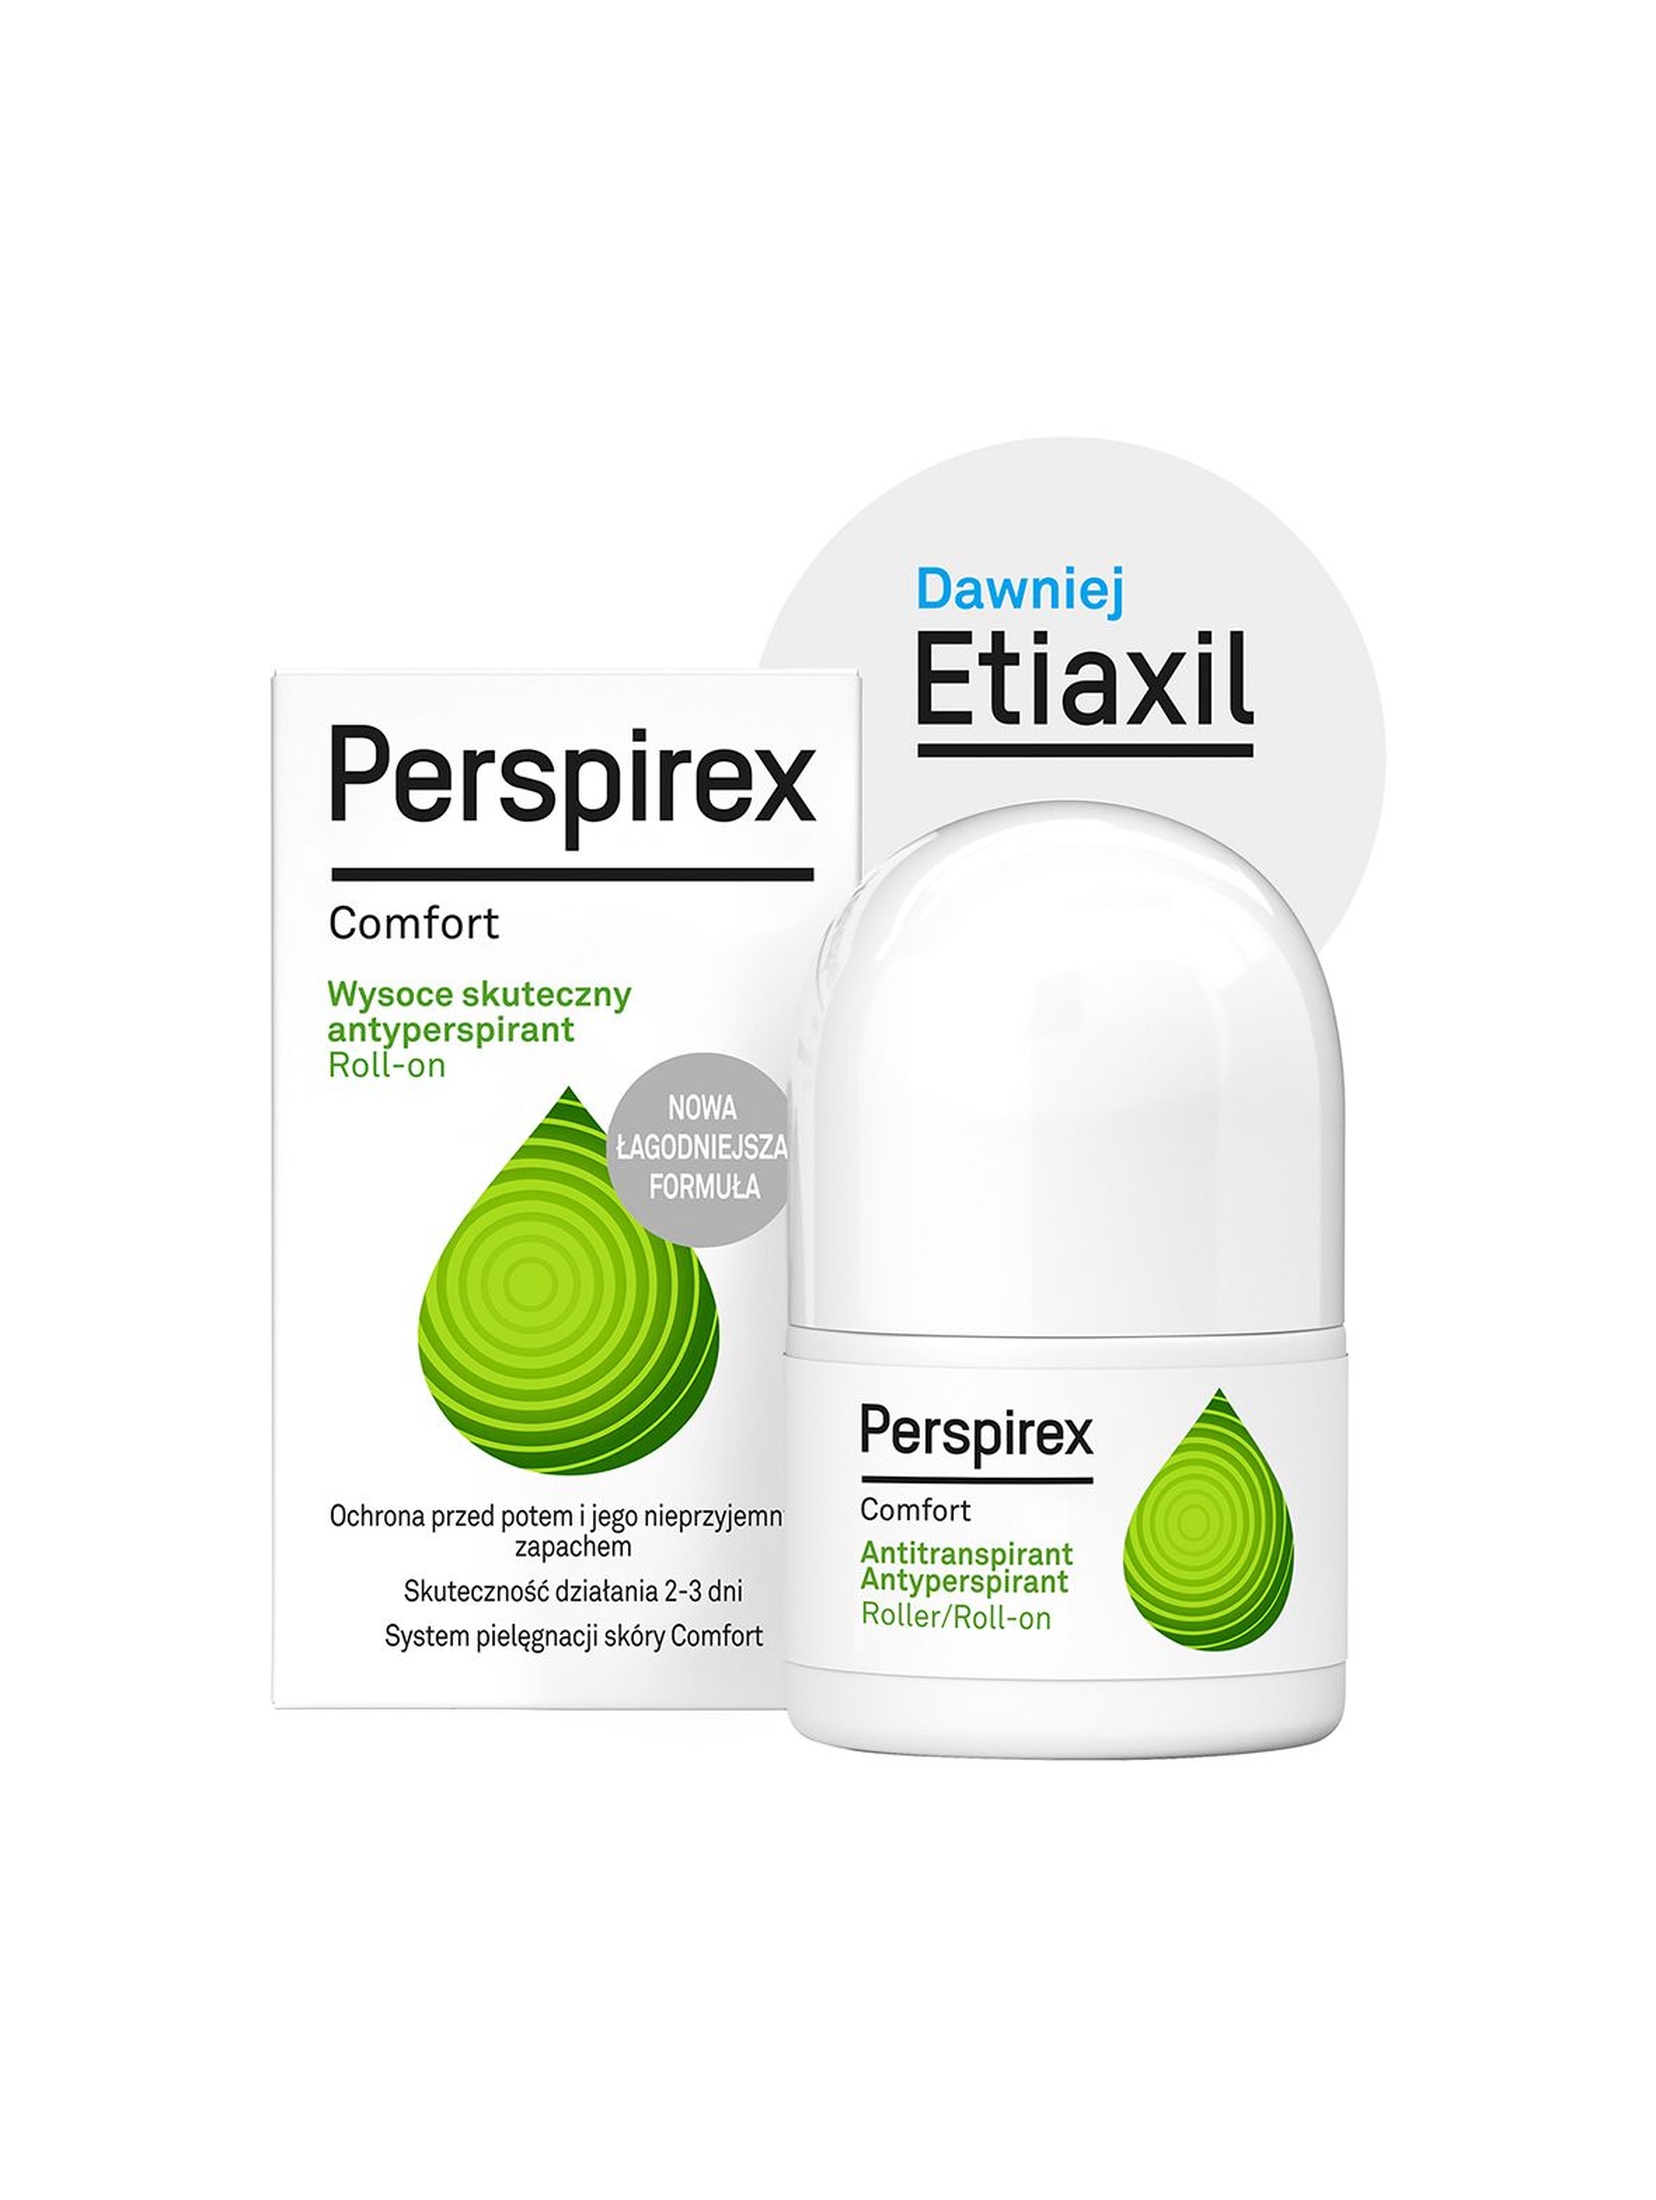 PERSPIREX Antyperspirant Comfort 20l